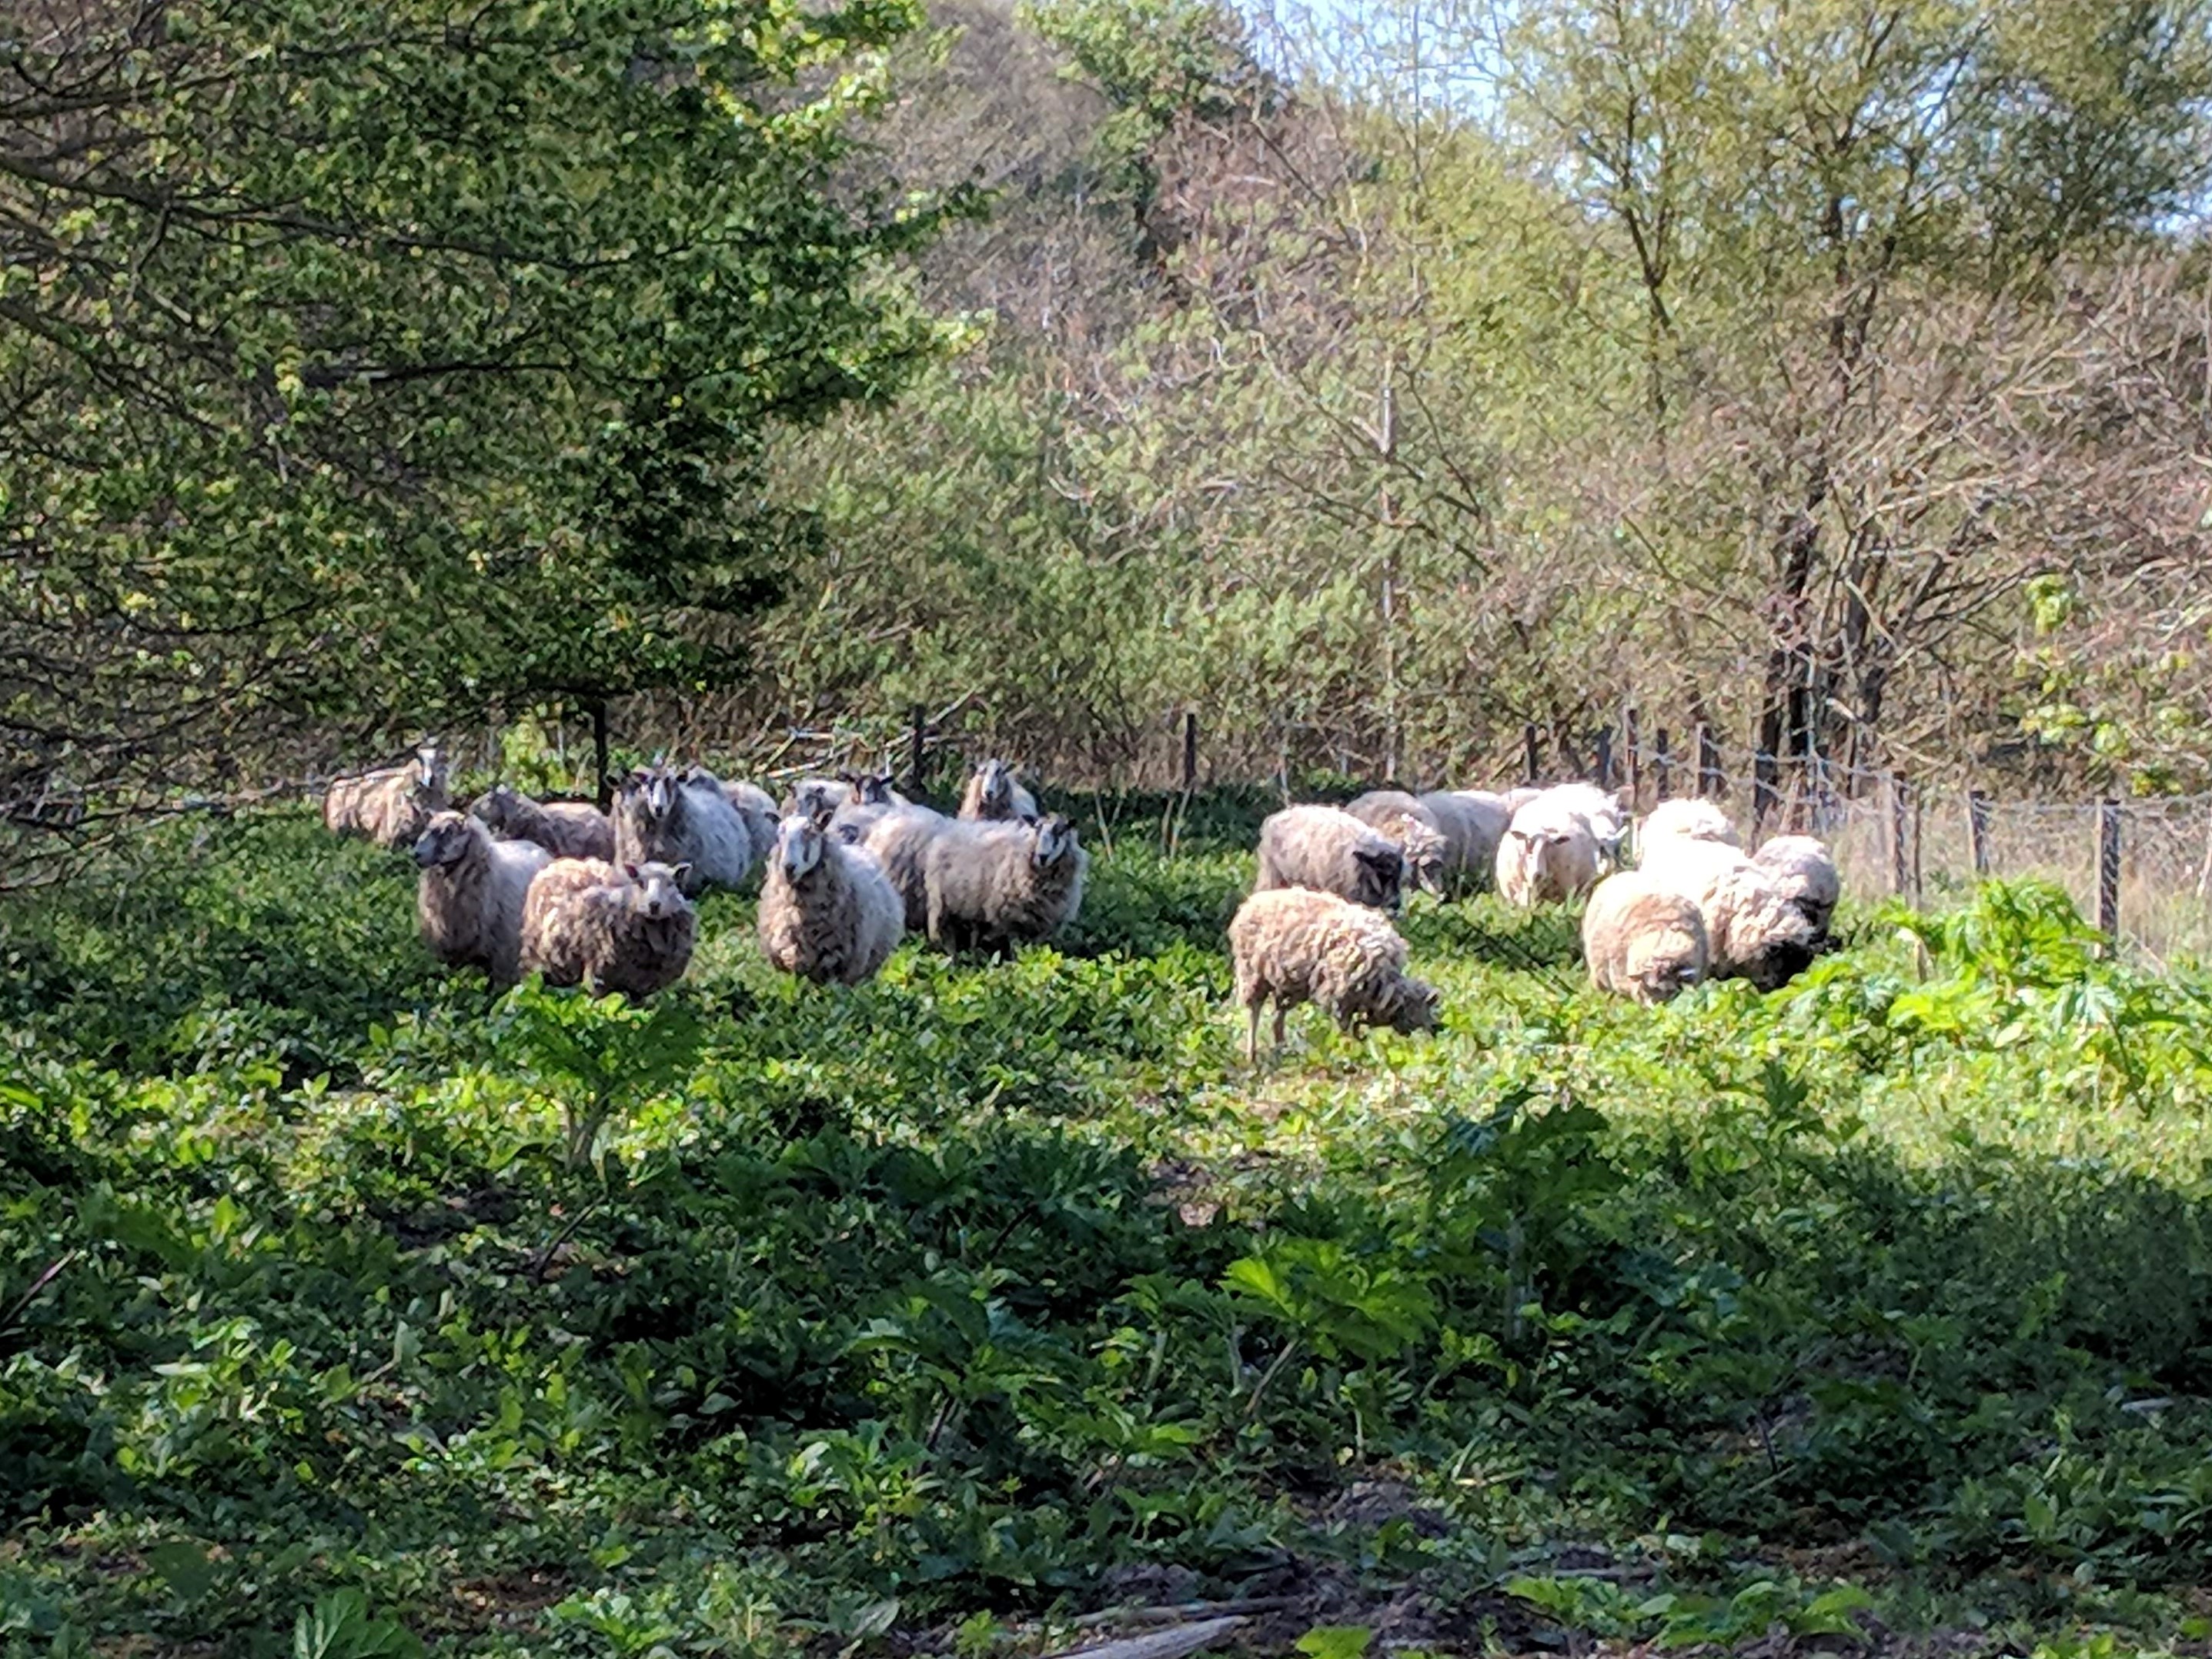 Sheep eating giant hogweed